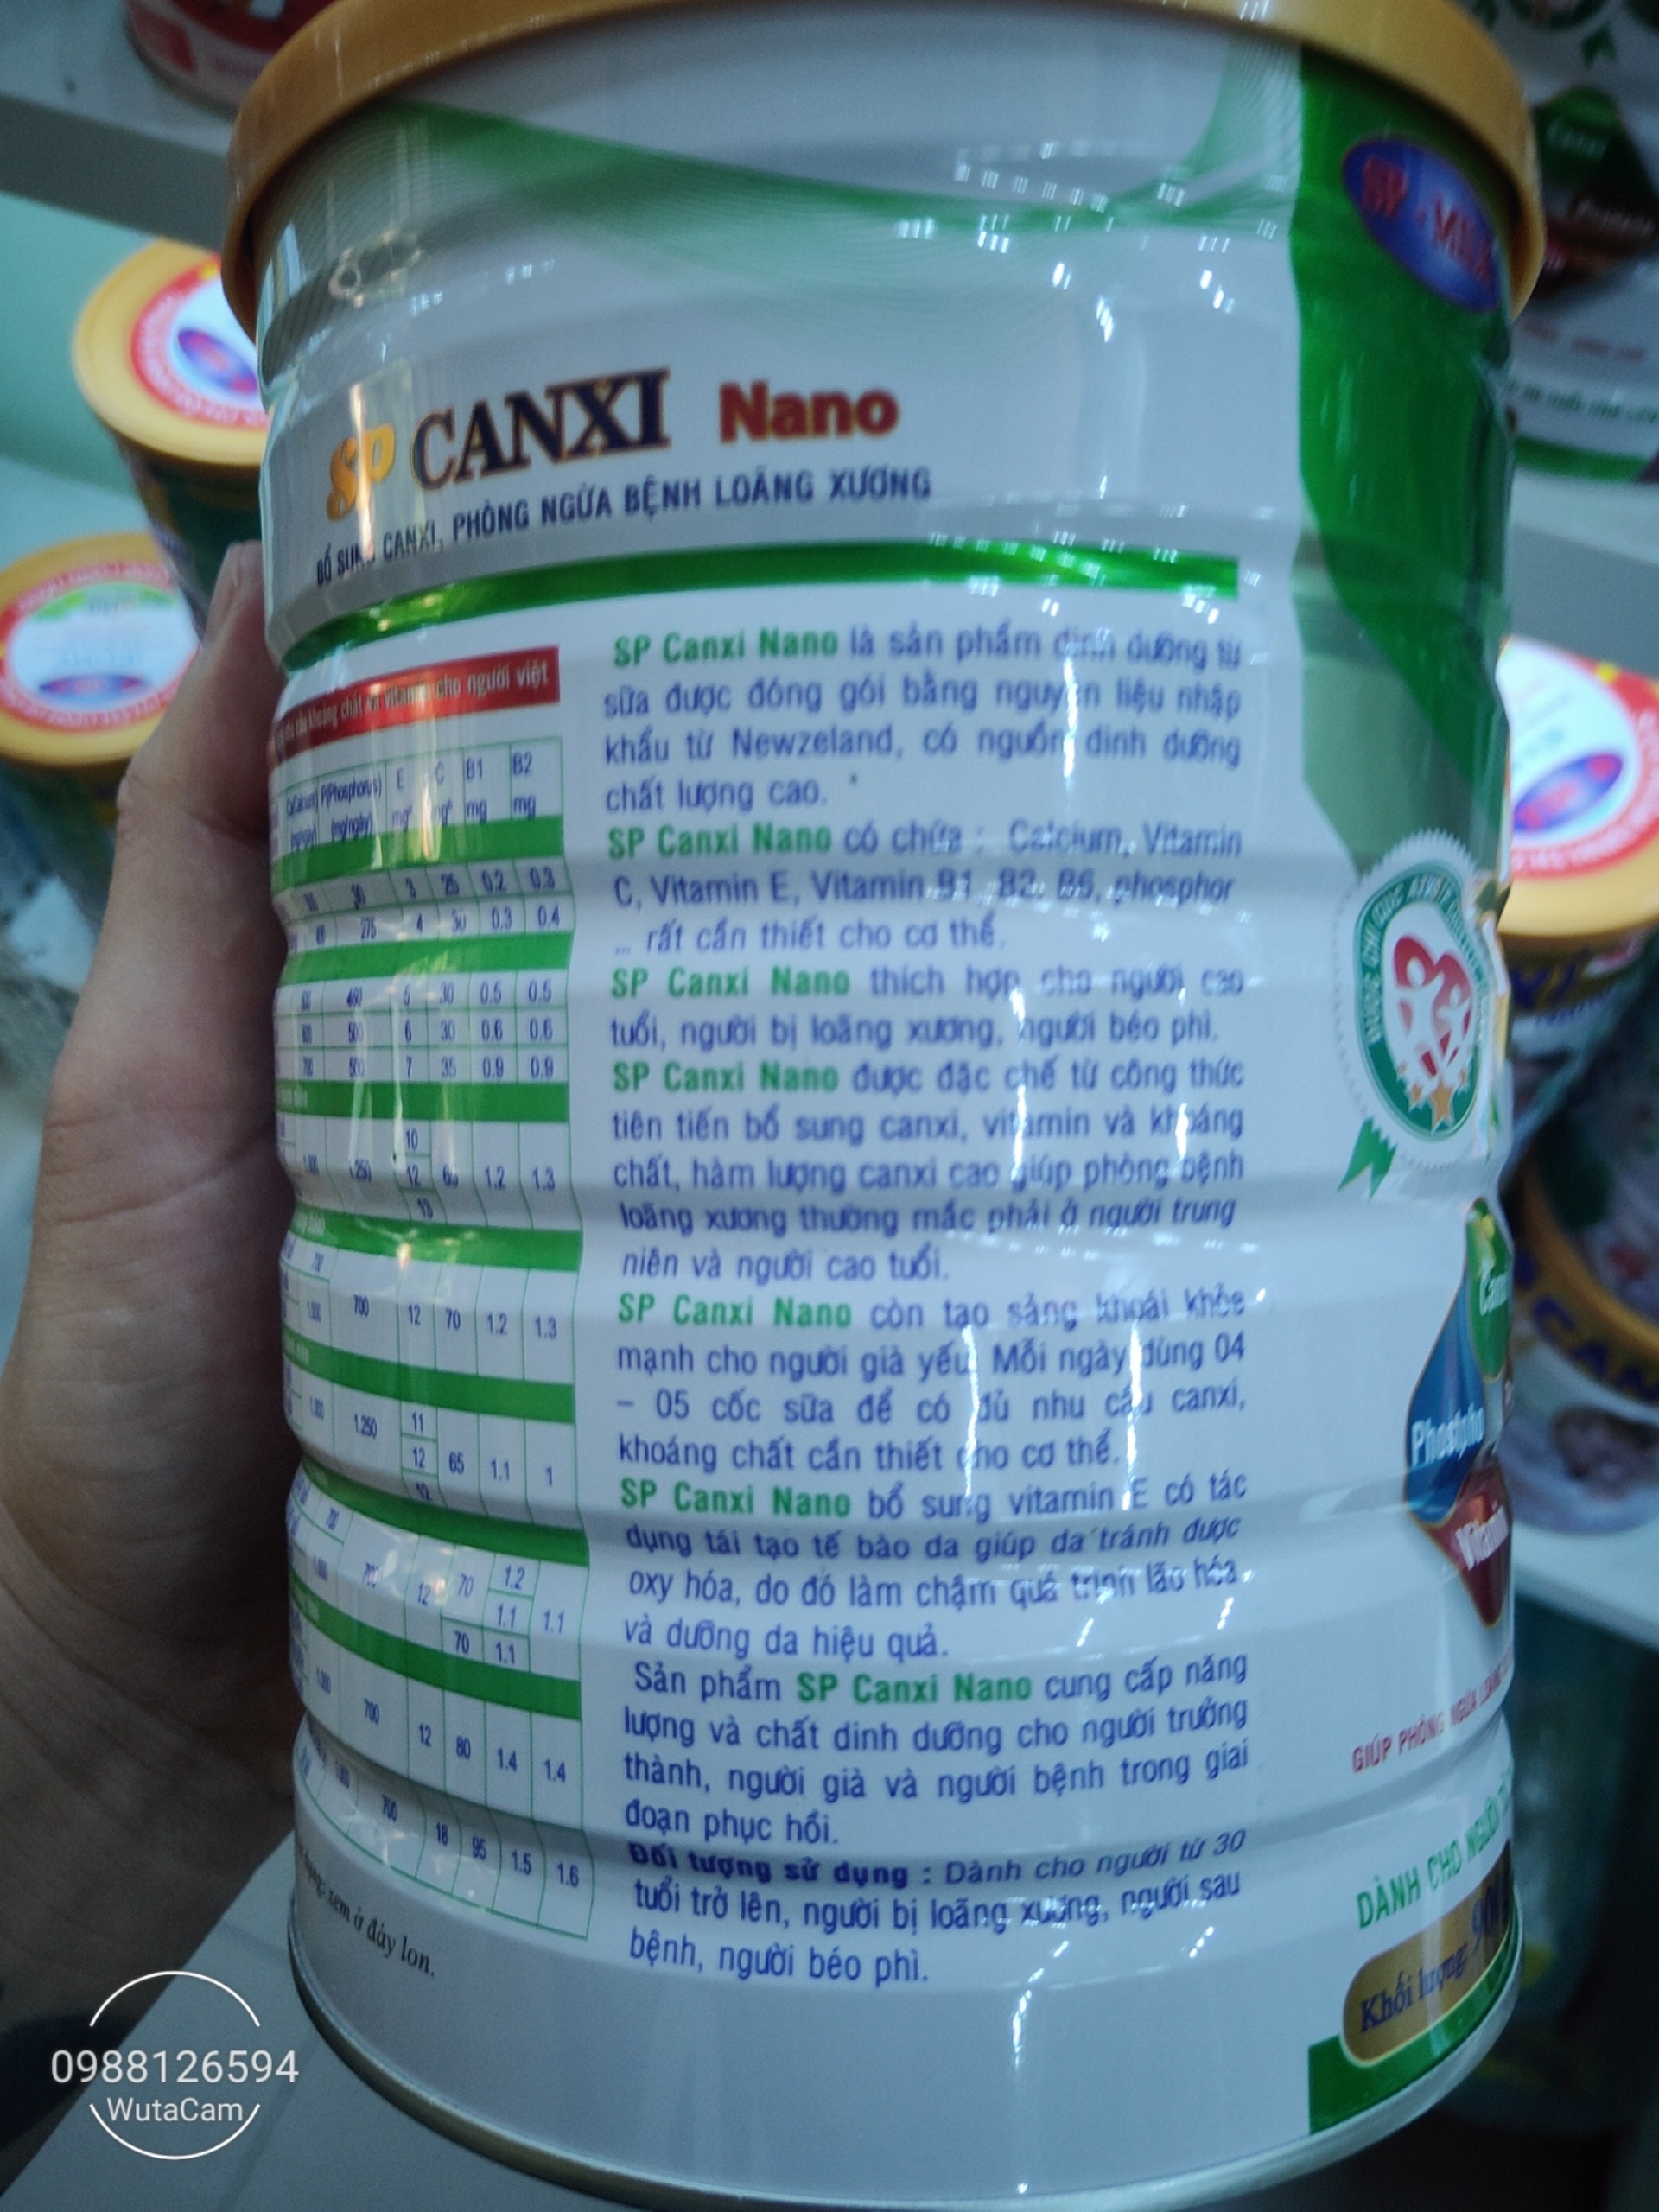 Sữa SP Canxi Nano-900G.Bổ xung canxi,phòng ngừa bệnh loãng xương.